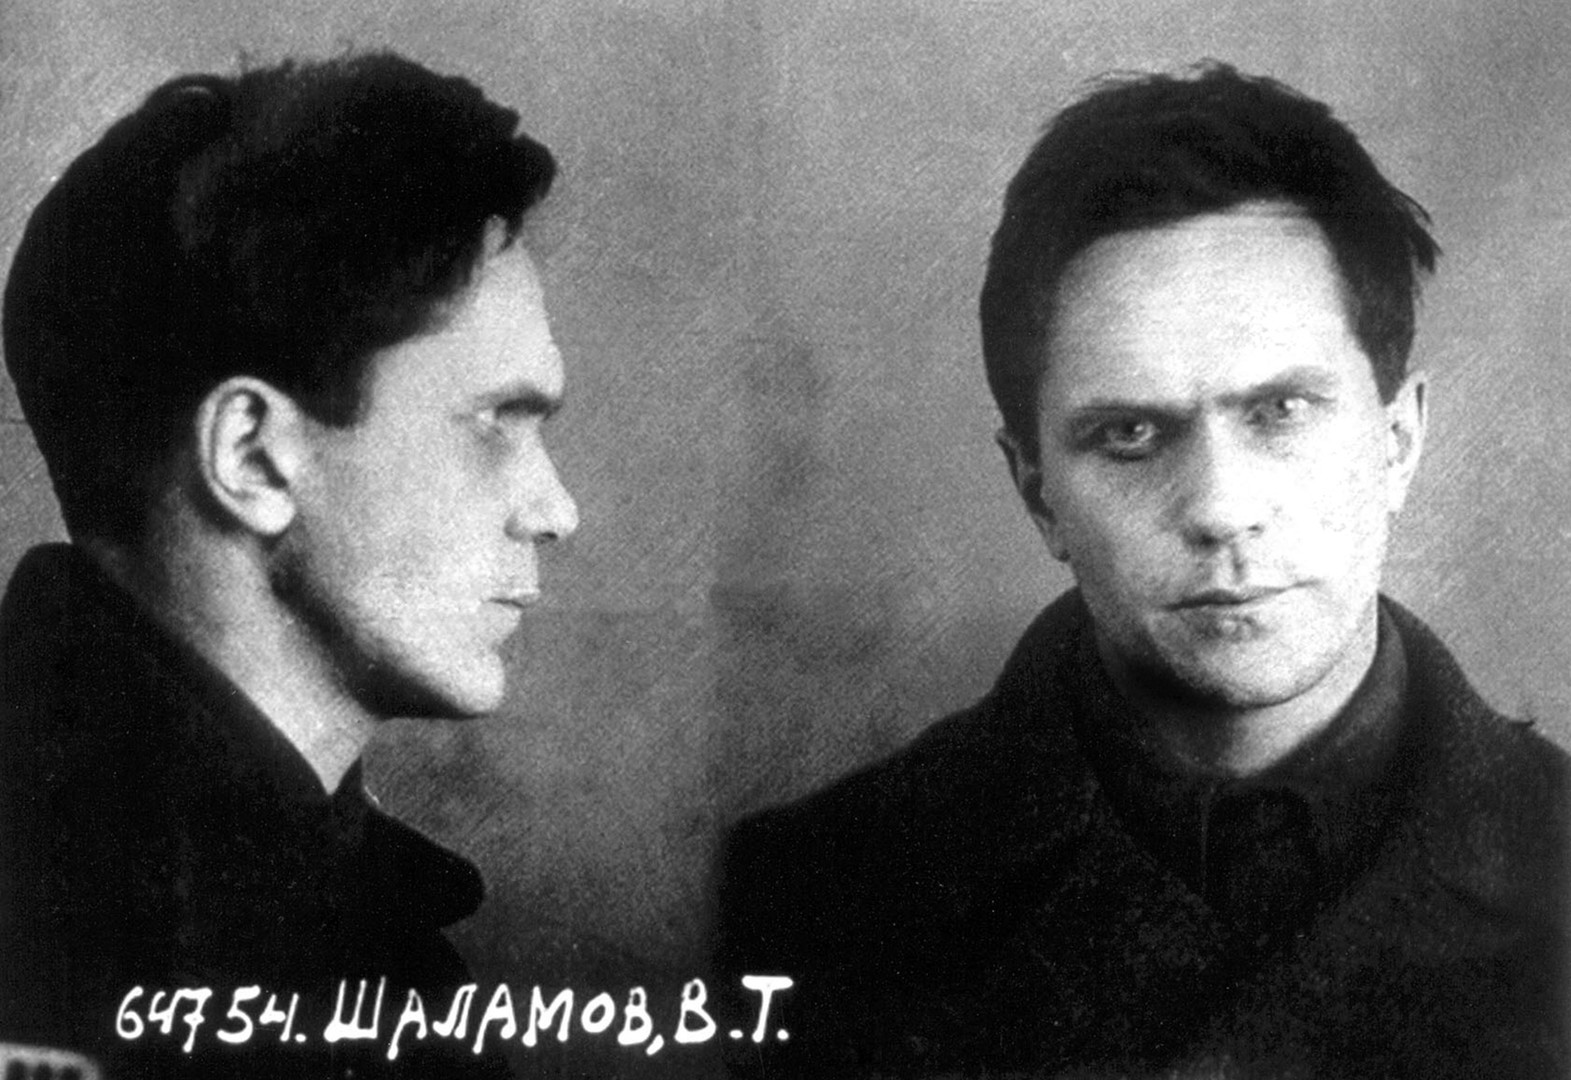 Die Akte Warlam Schalamow nach seiner Inhaftierung 1937